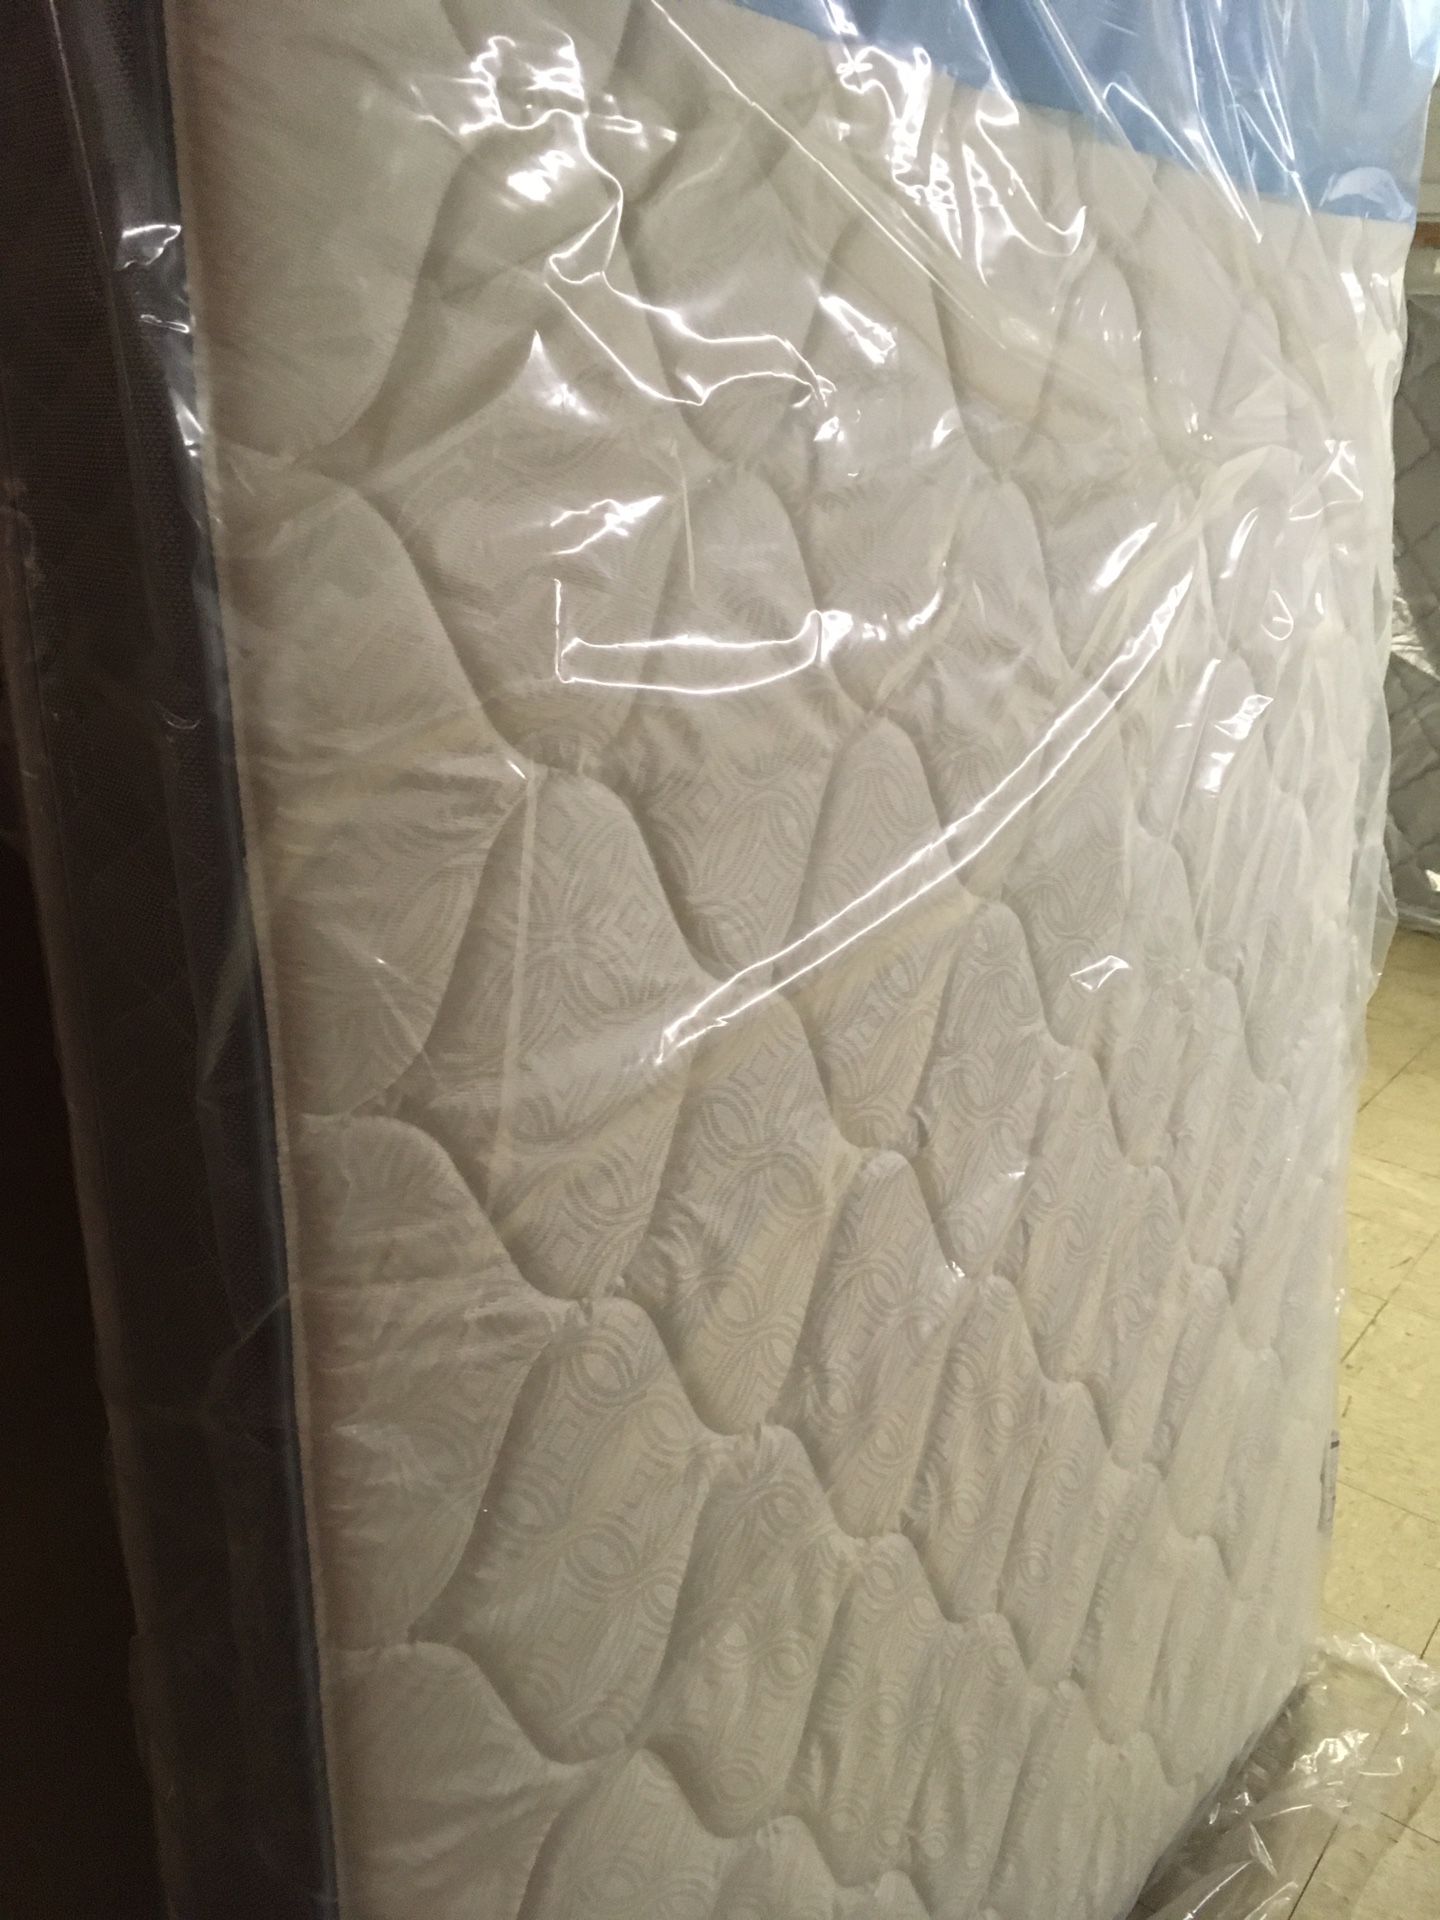 Brand new plush king size mattress